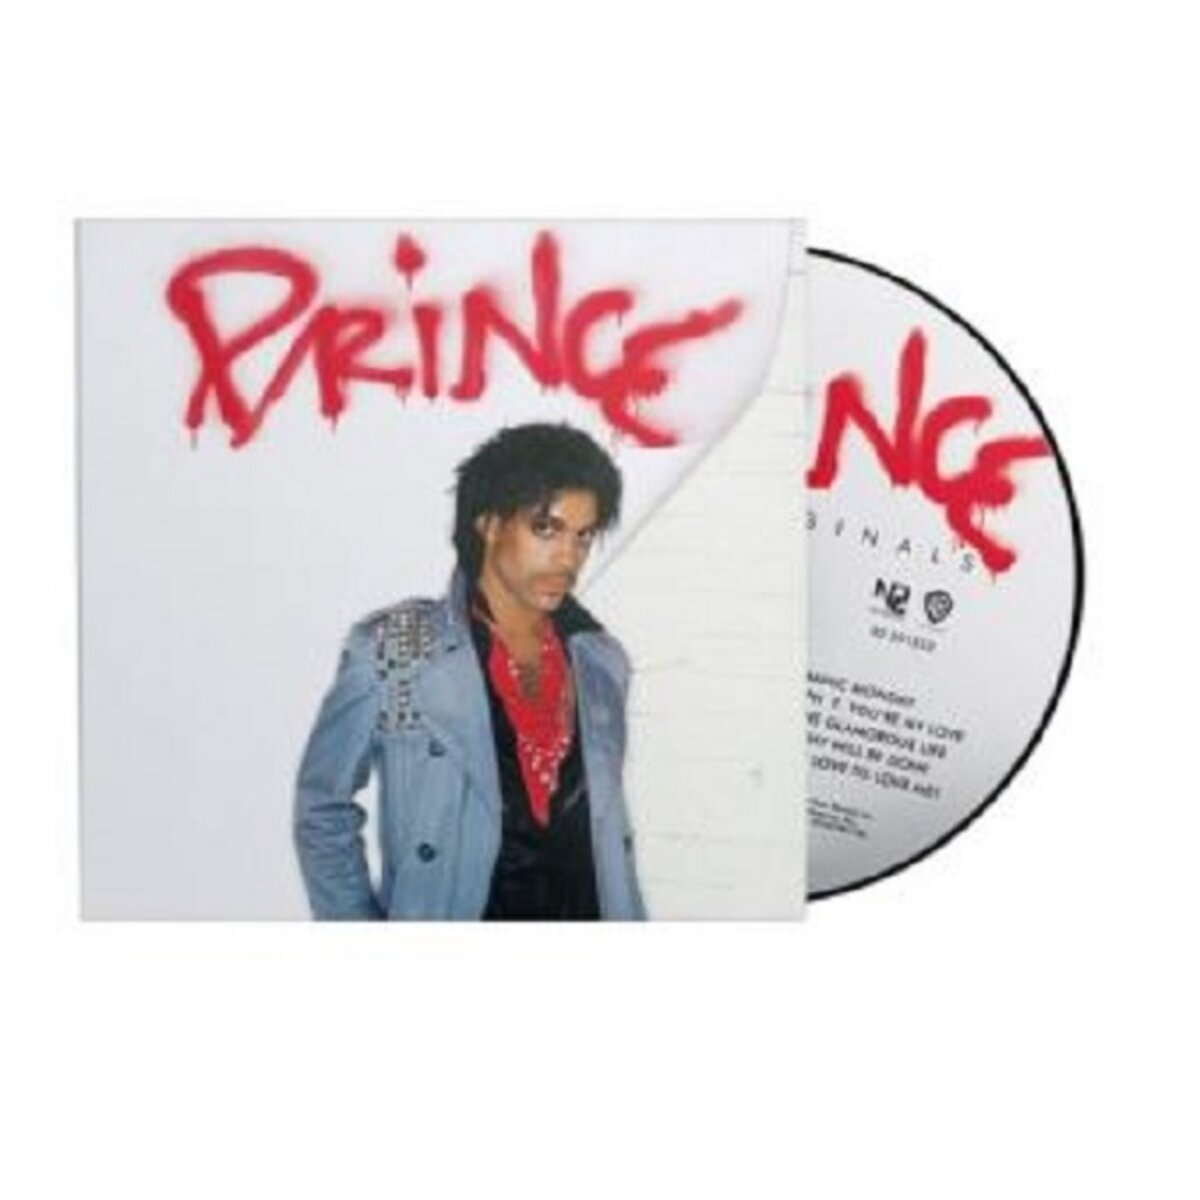 Originals - Prince CD